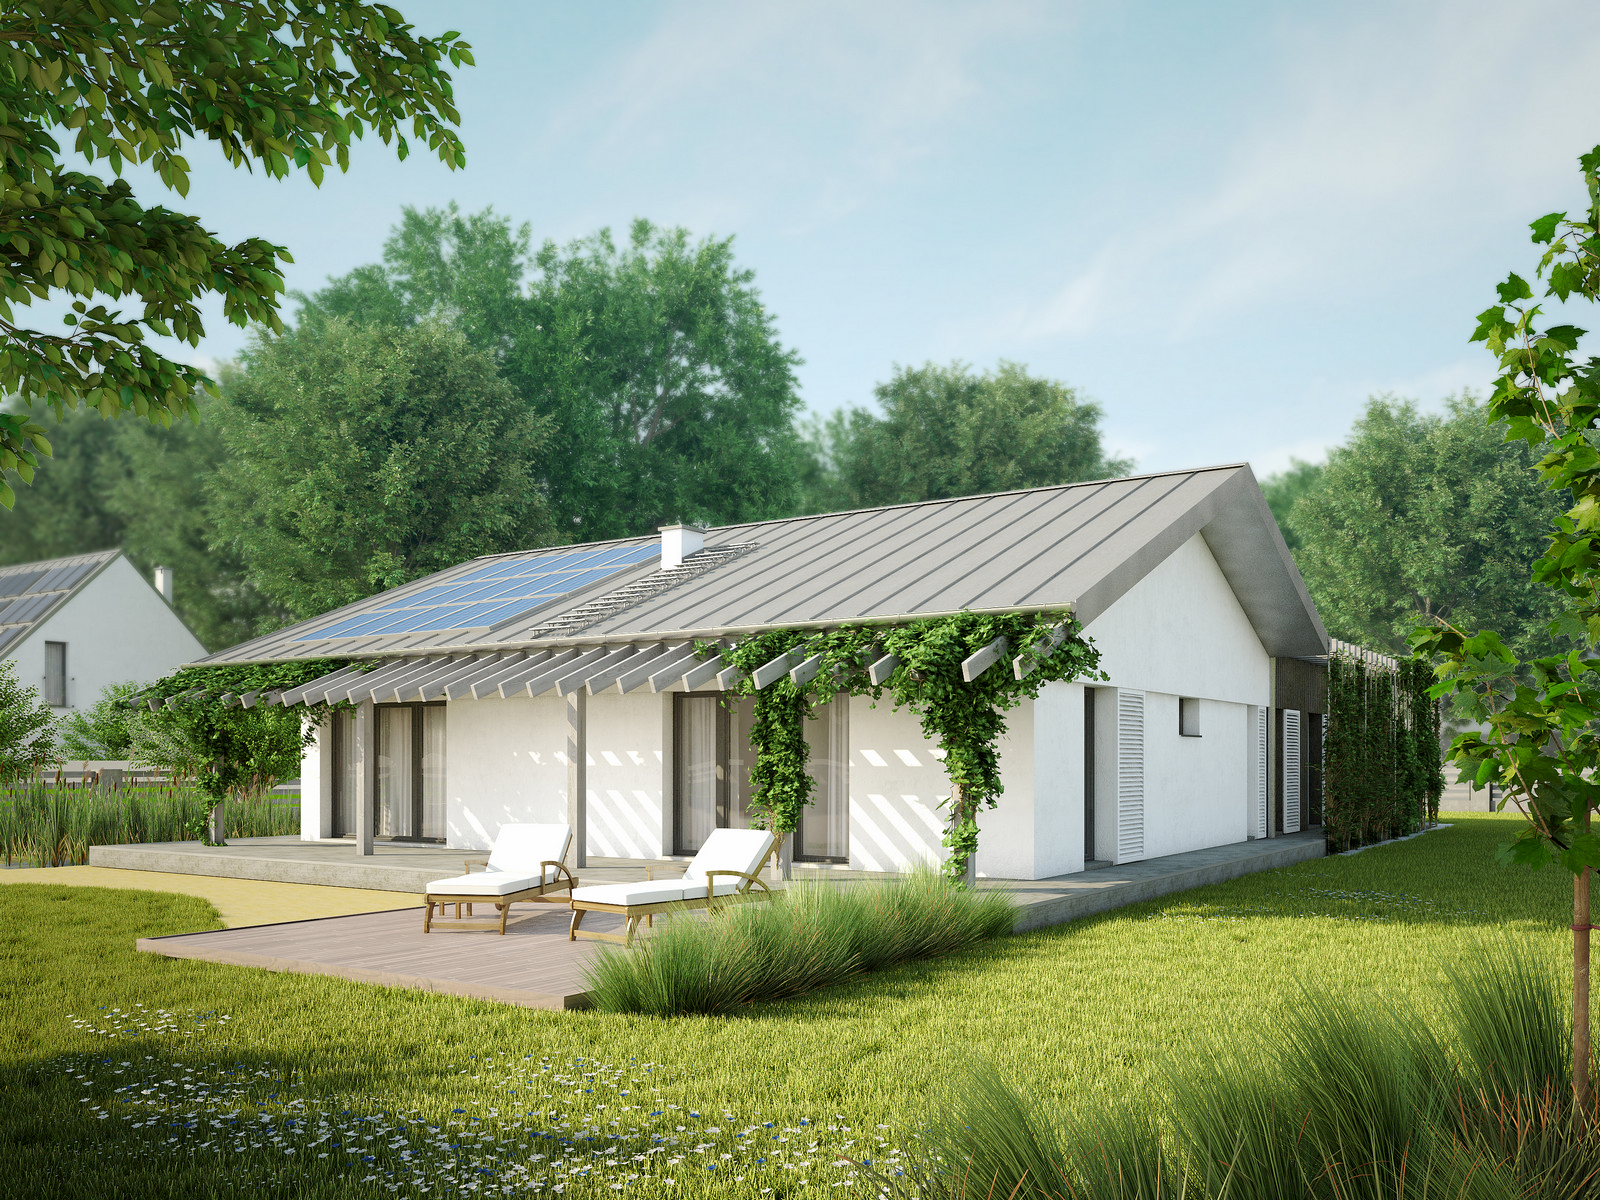 Projekt domu NIZINNY Domy Czystej Energii widok z boku i od ogrodu